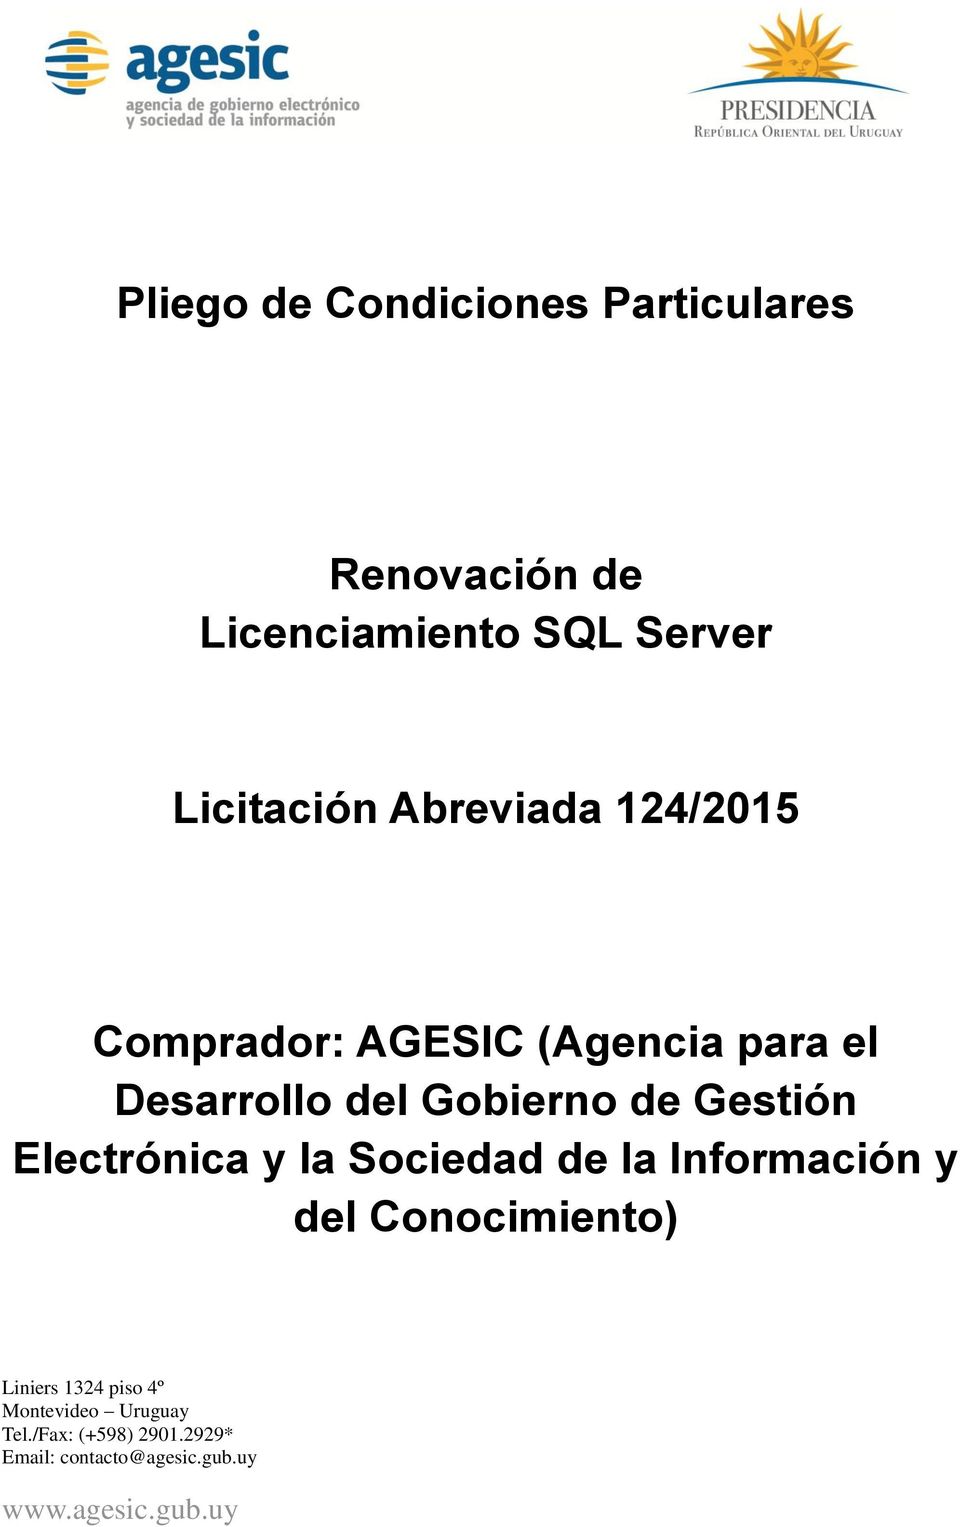 Comprador: AGESIC (Agencia para el Desarrollo del Gobierno